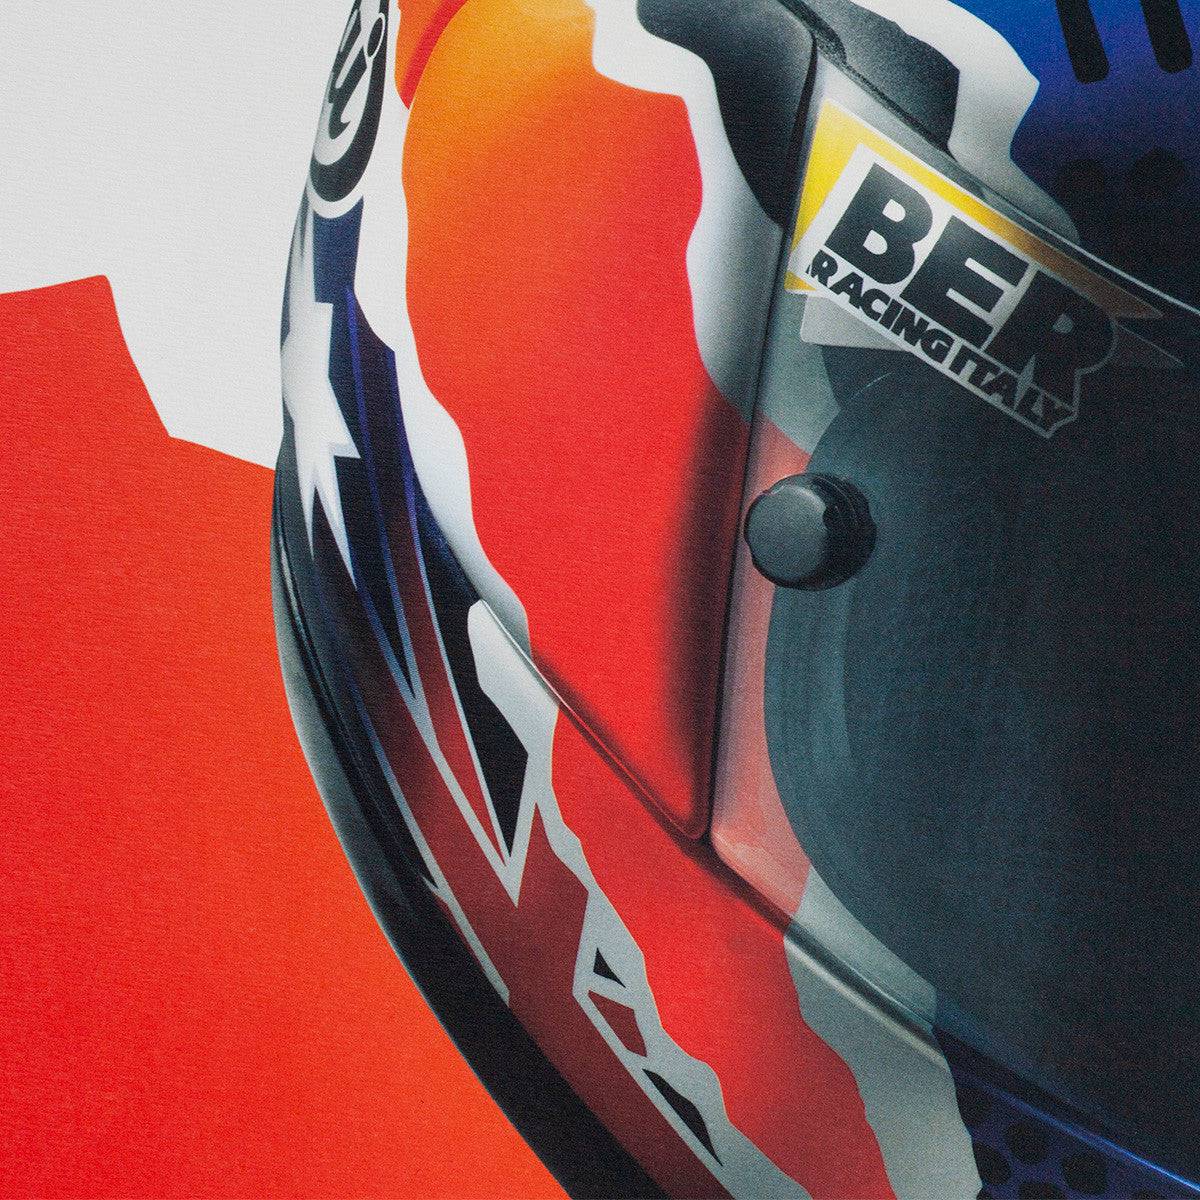 Mick Doohan - Helmet - 1999 - Poster